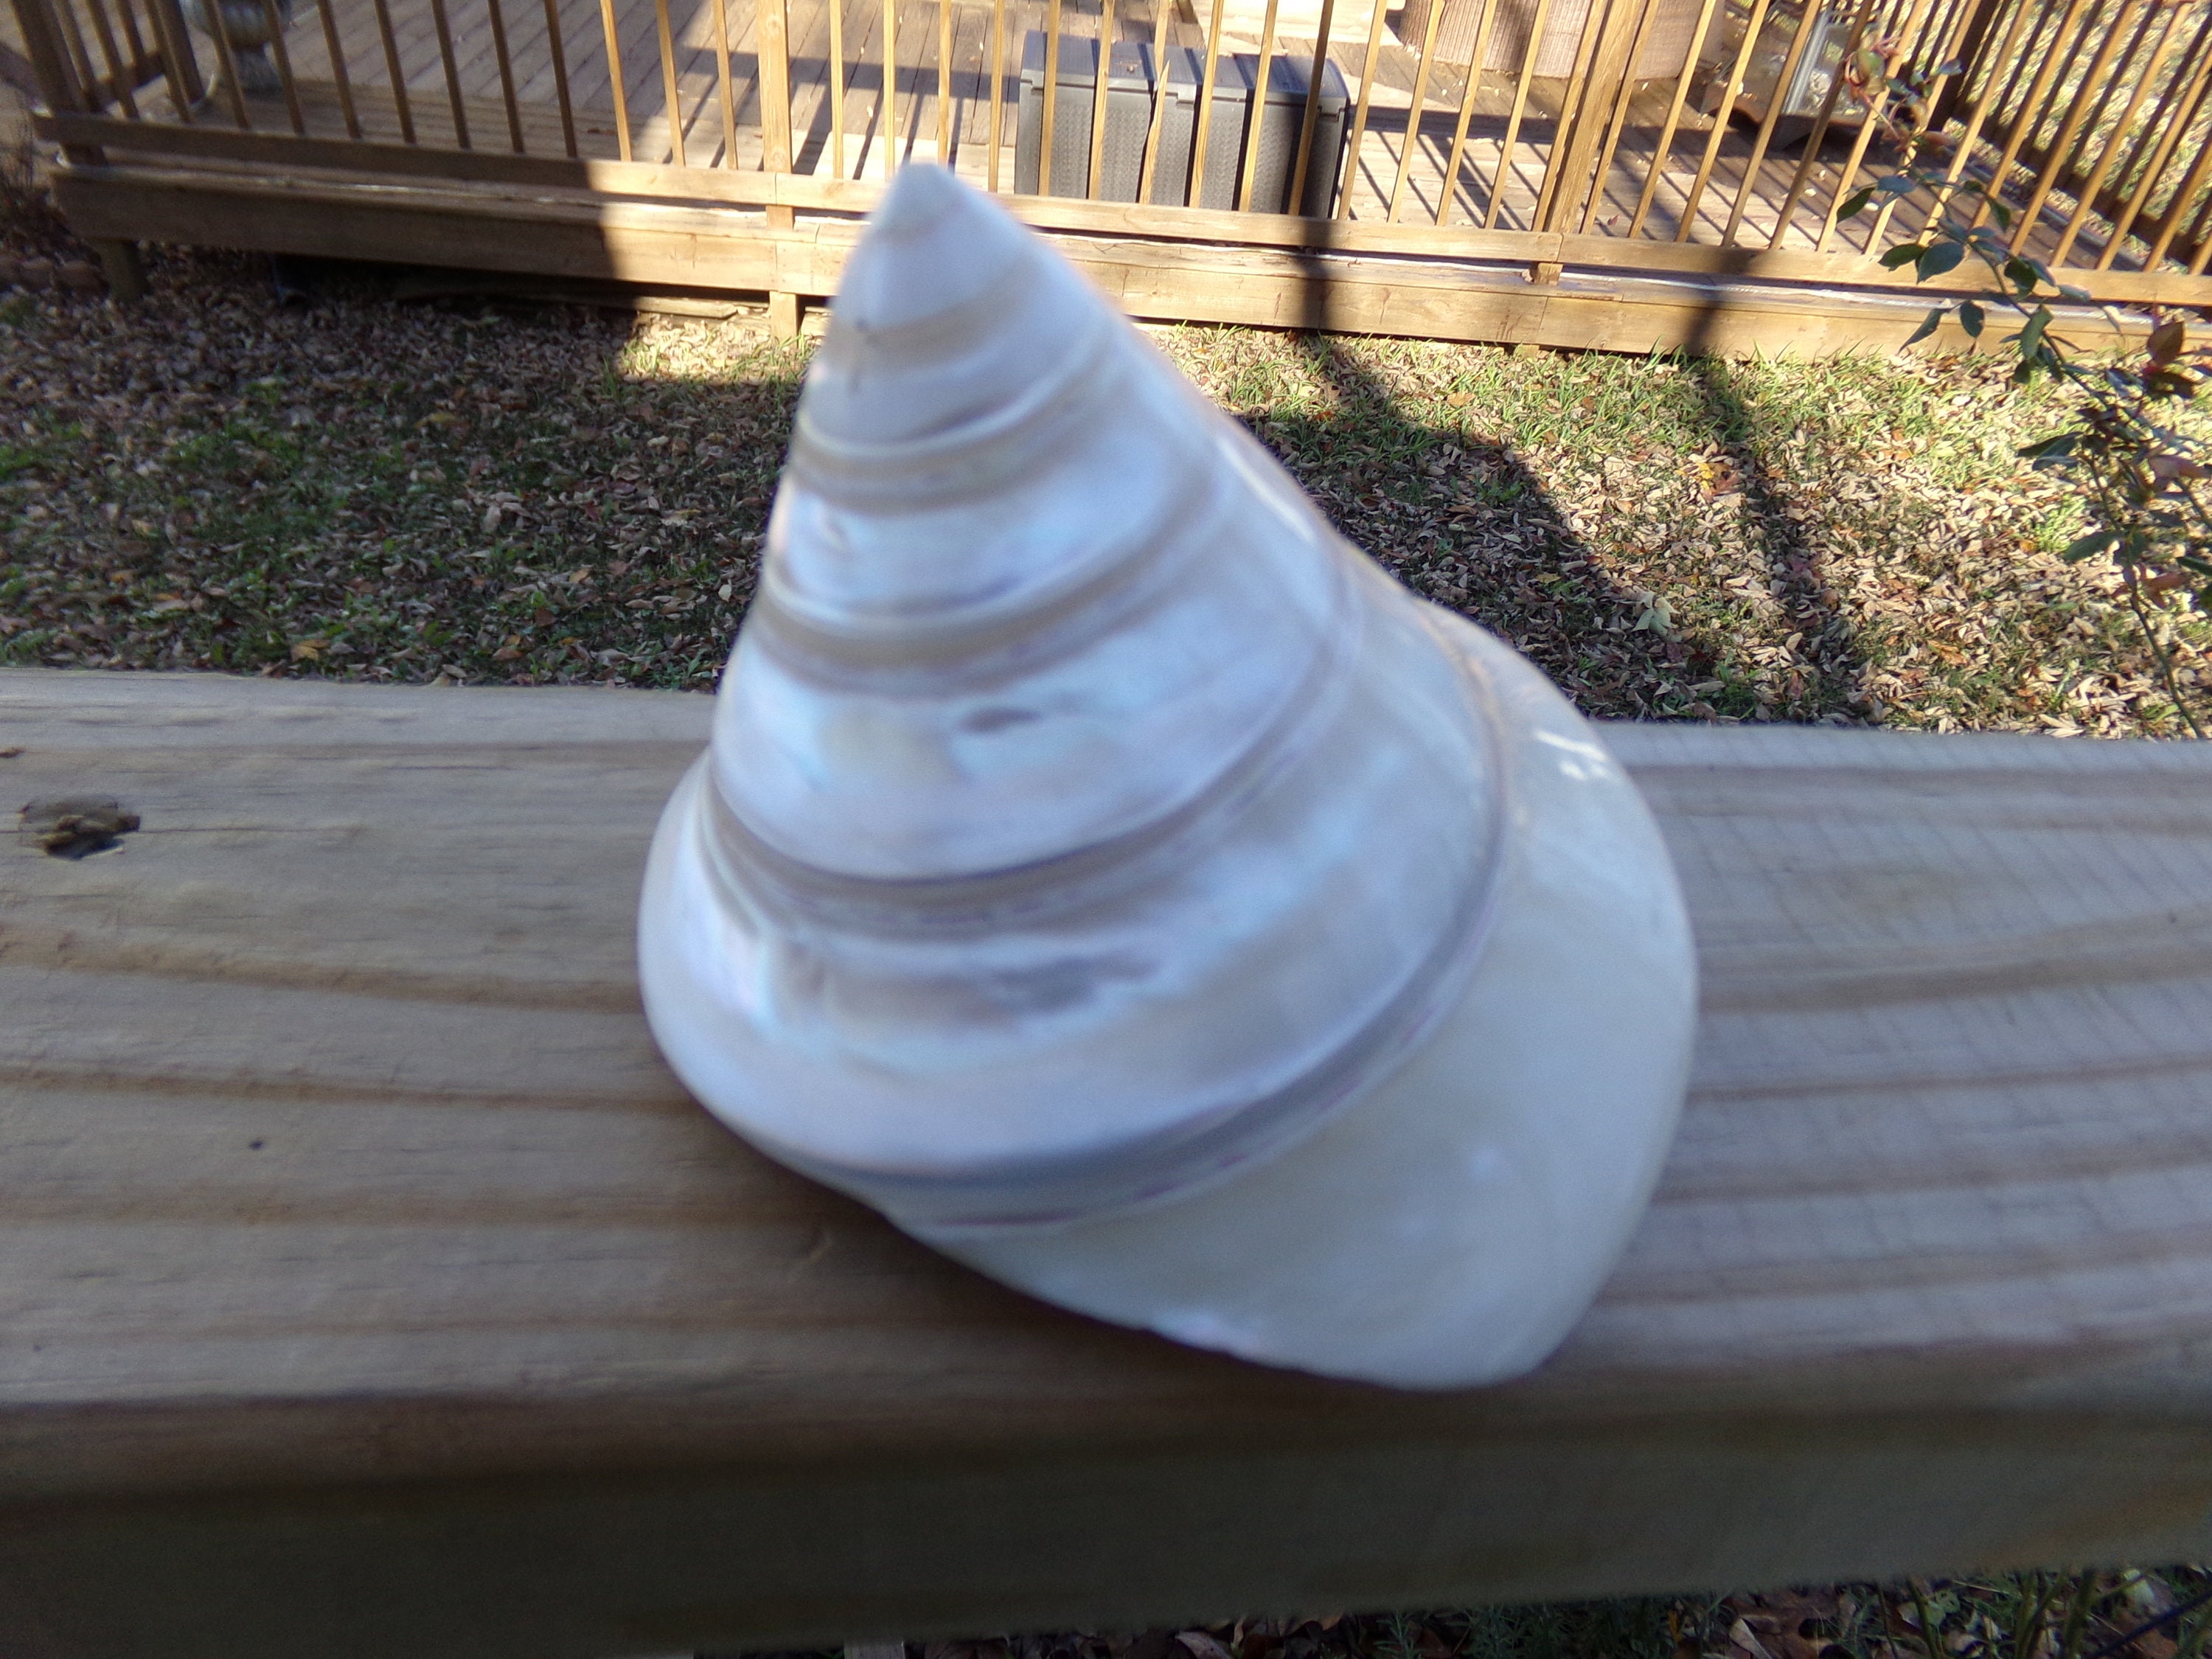 50 Small Natural Spiral Seashell, Spiral Sea Shell Bead, Bulk